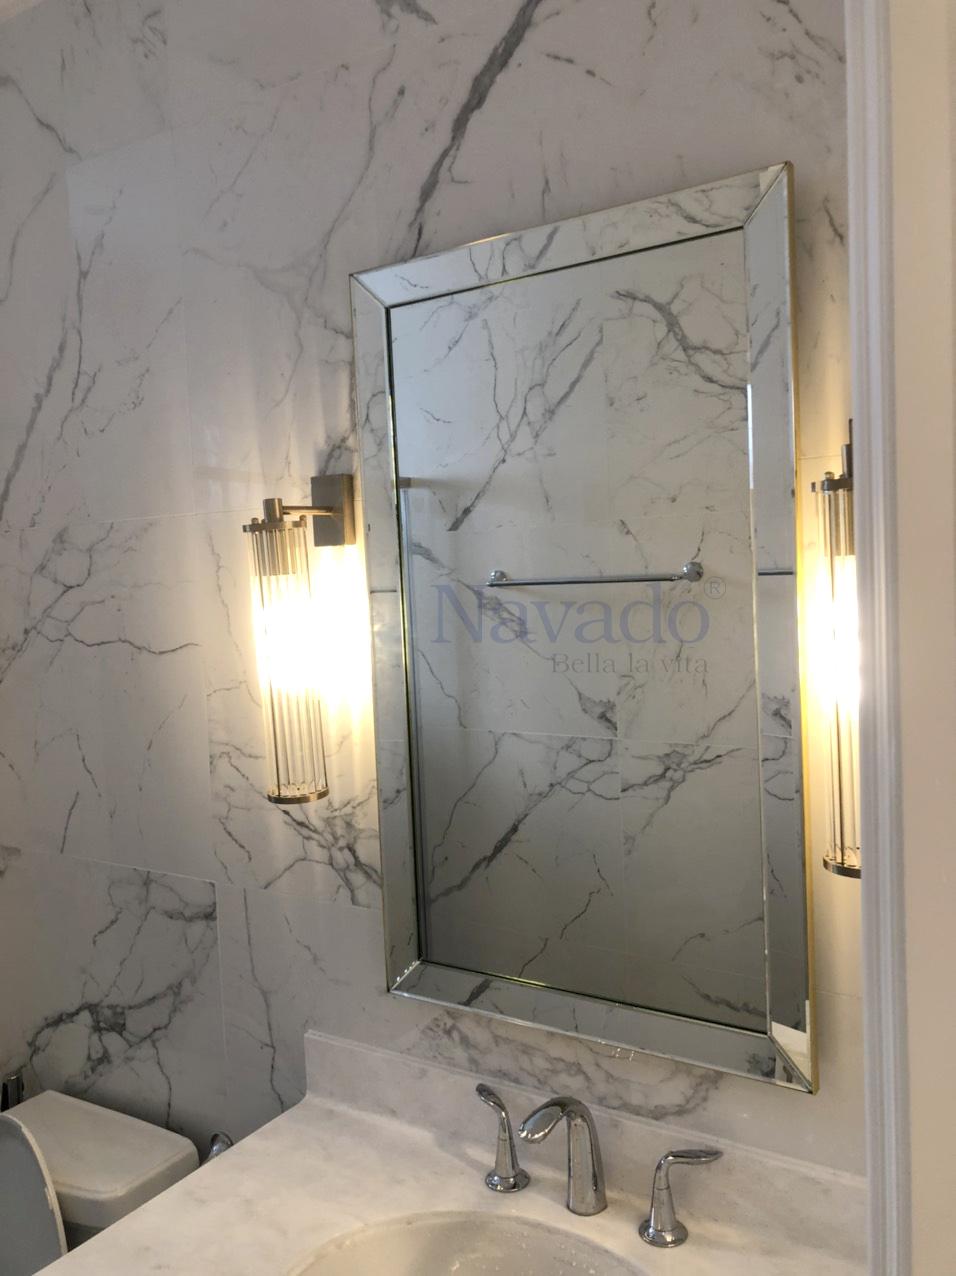 Nếu bạn muốn một món đồ trang trí làm nổi bật không chỉ phòng tắm của bạn mà cả toàn bộ ngôi nhà, gương nghệ thuật Blanco của chúng tôi là một lọc điều hoàn hảo. Với những đường nét khác biệt và sang trọng, chiếc gương này sẽ trở thành một điểm nhấn cho phòng tắm của bạn. Hãy tận hưởng không gian sống của mình với Blanco.